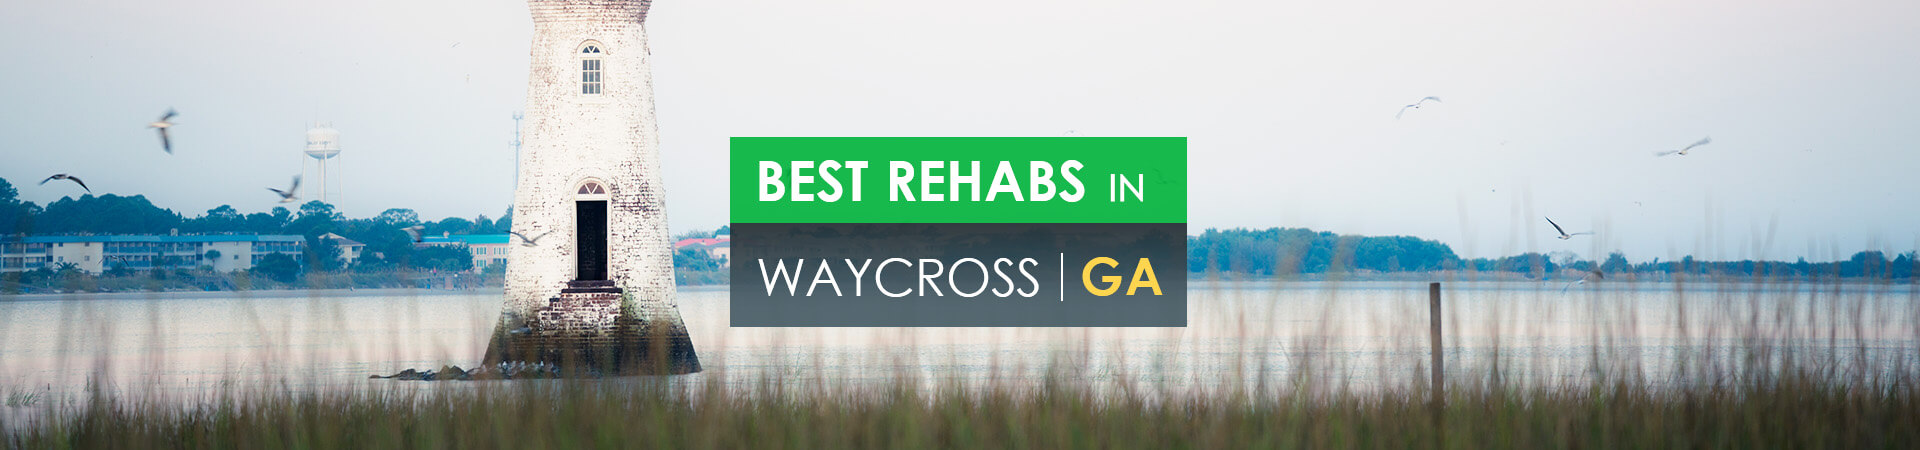 Best rehabs in Waycross, GA